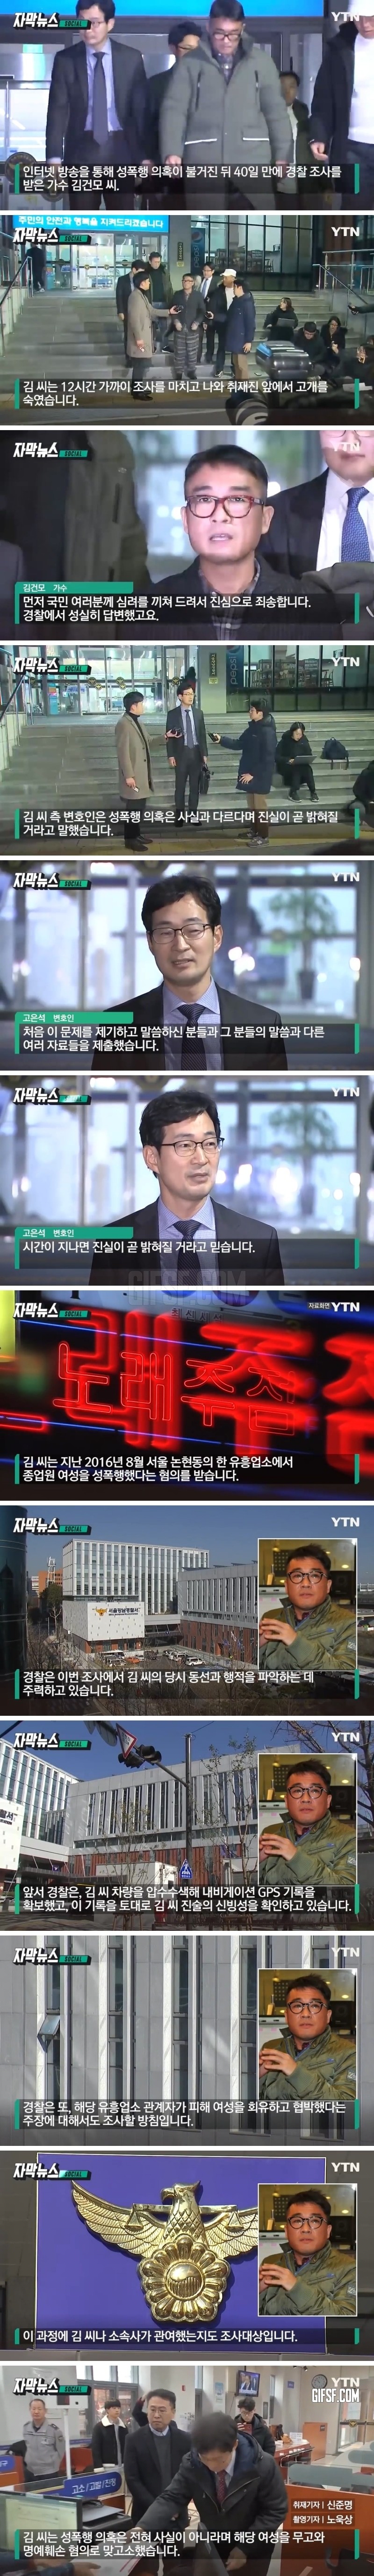 ',성폭행 의혹', 12시간 조사받고 나온 김건모의 말.jpg